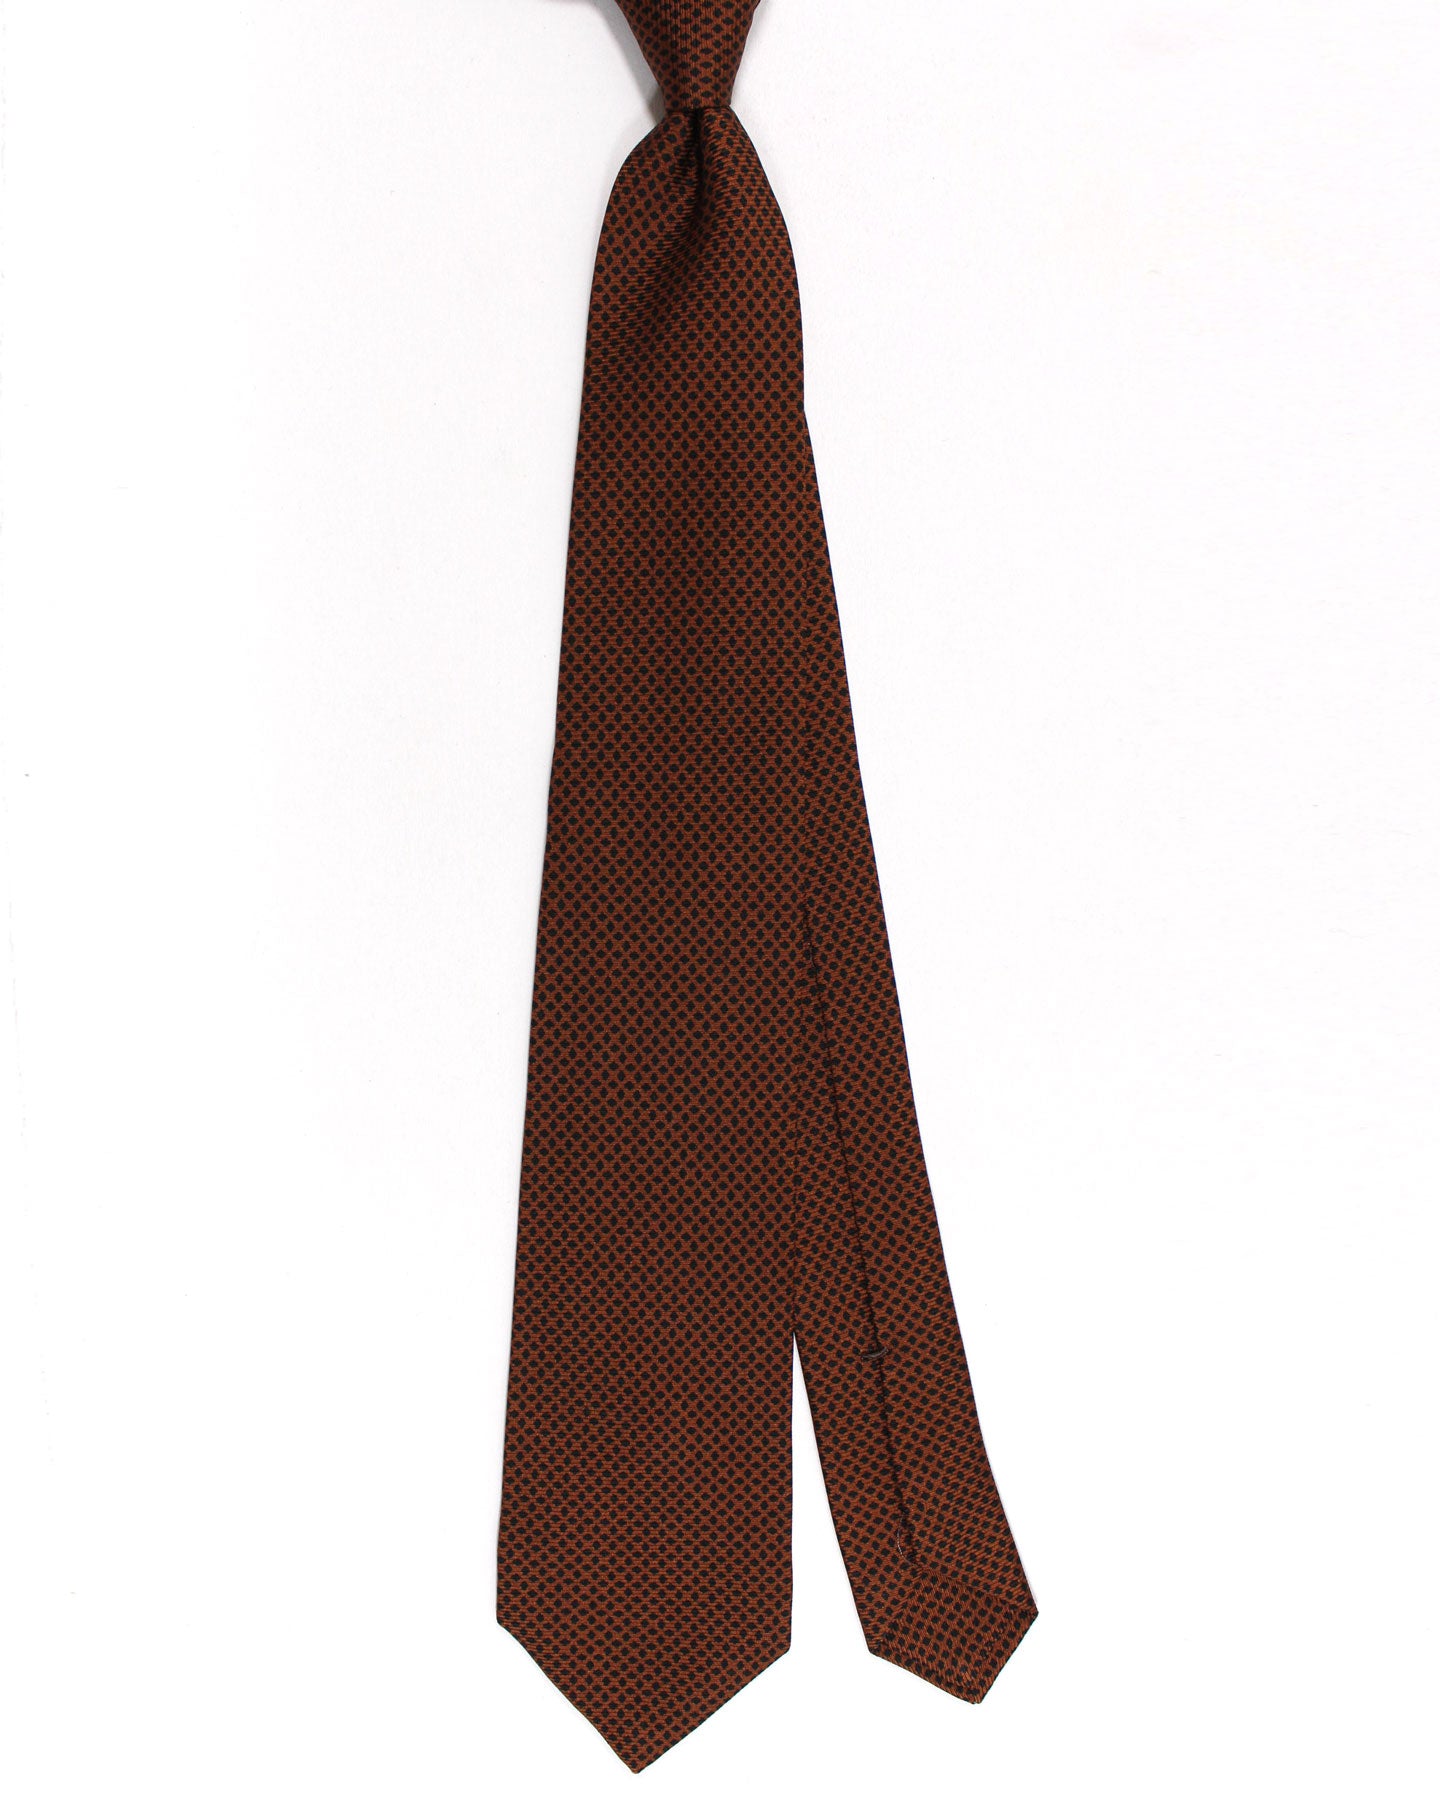 Kiton Silk Tie Brown Black Grid Design - Sevenfold Necktie